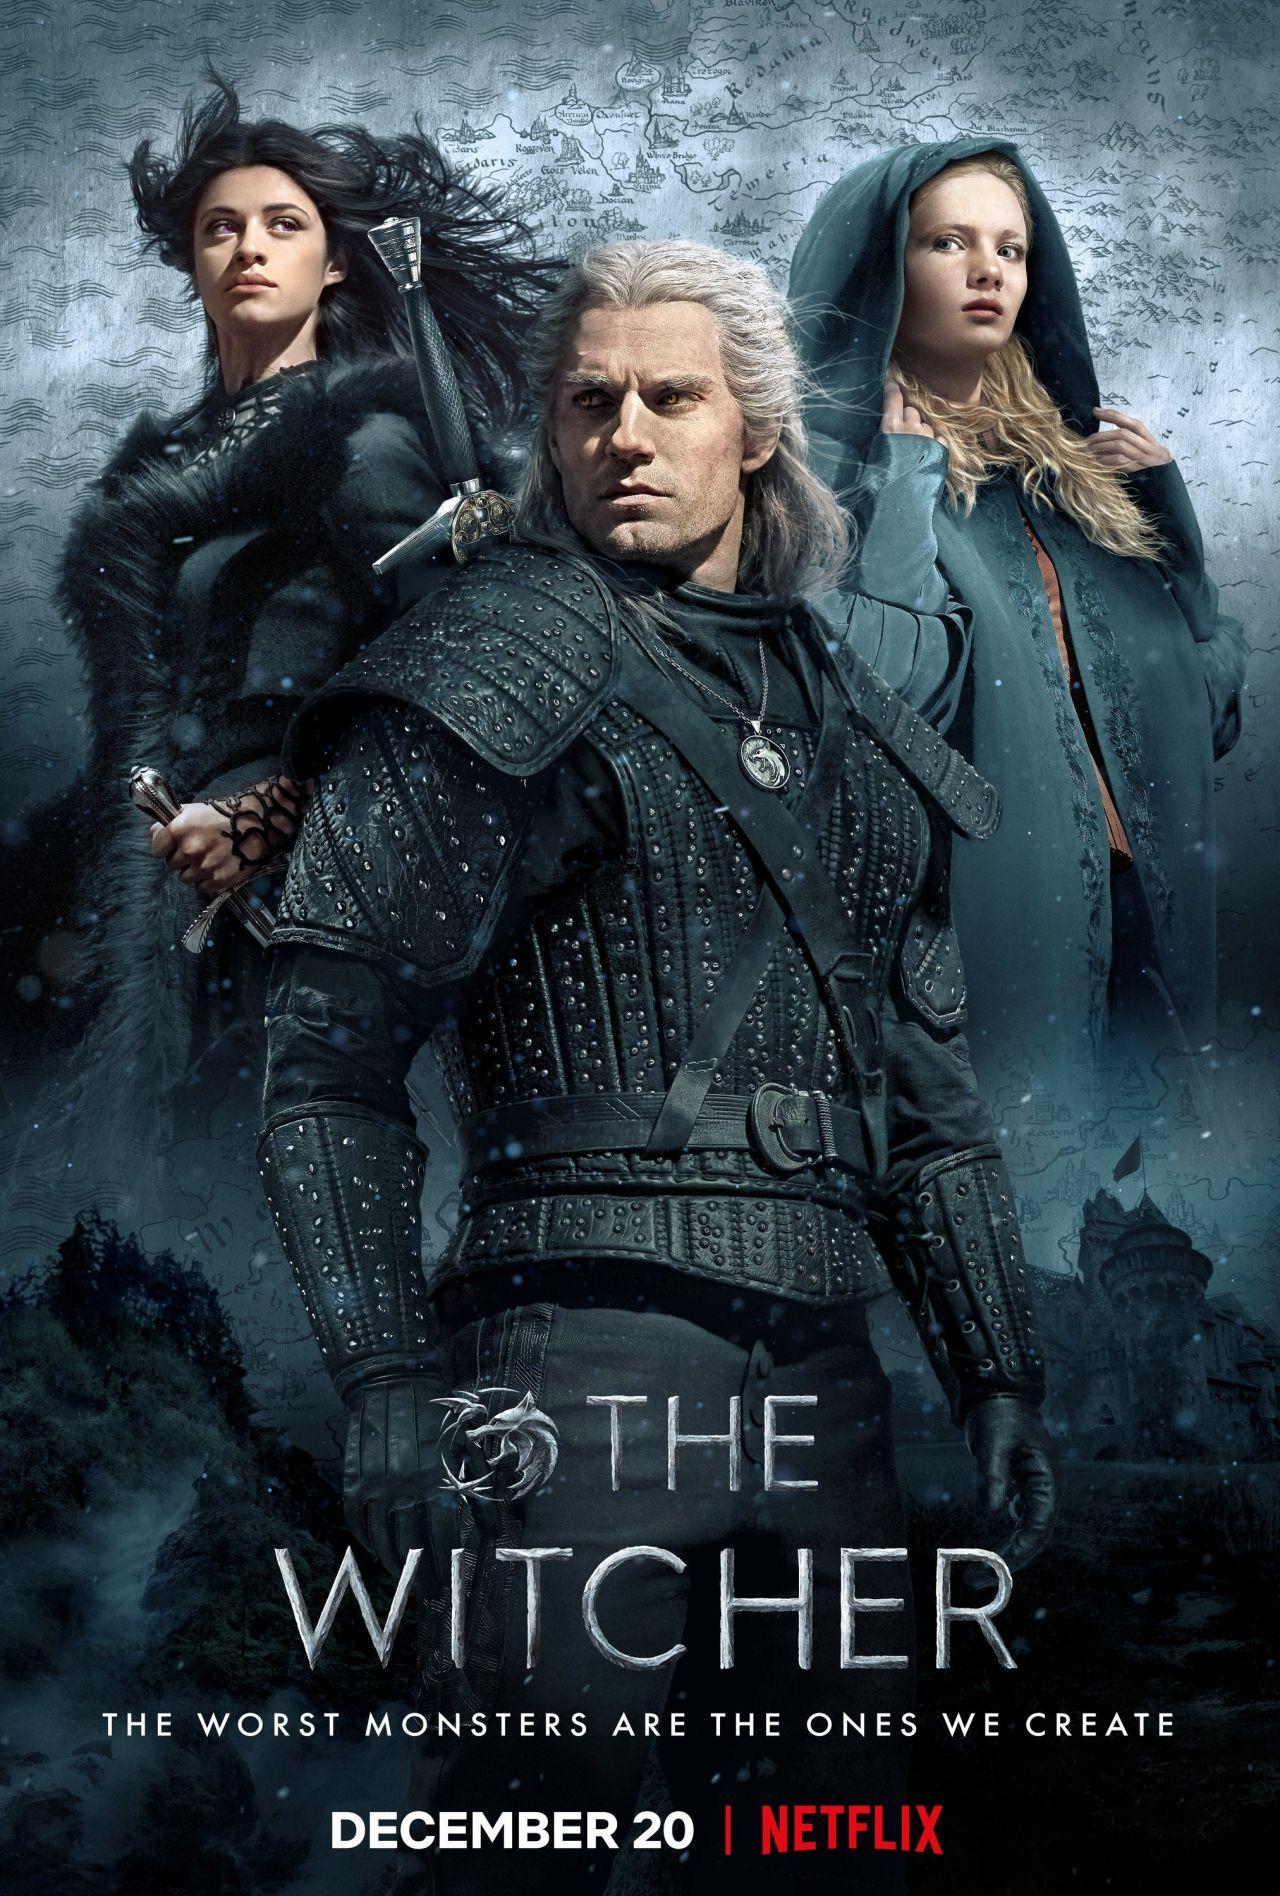 The Witcher Netflix wallpaper